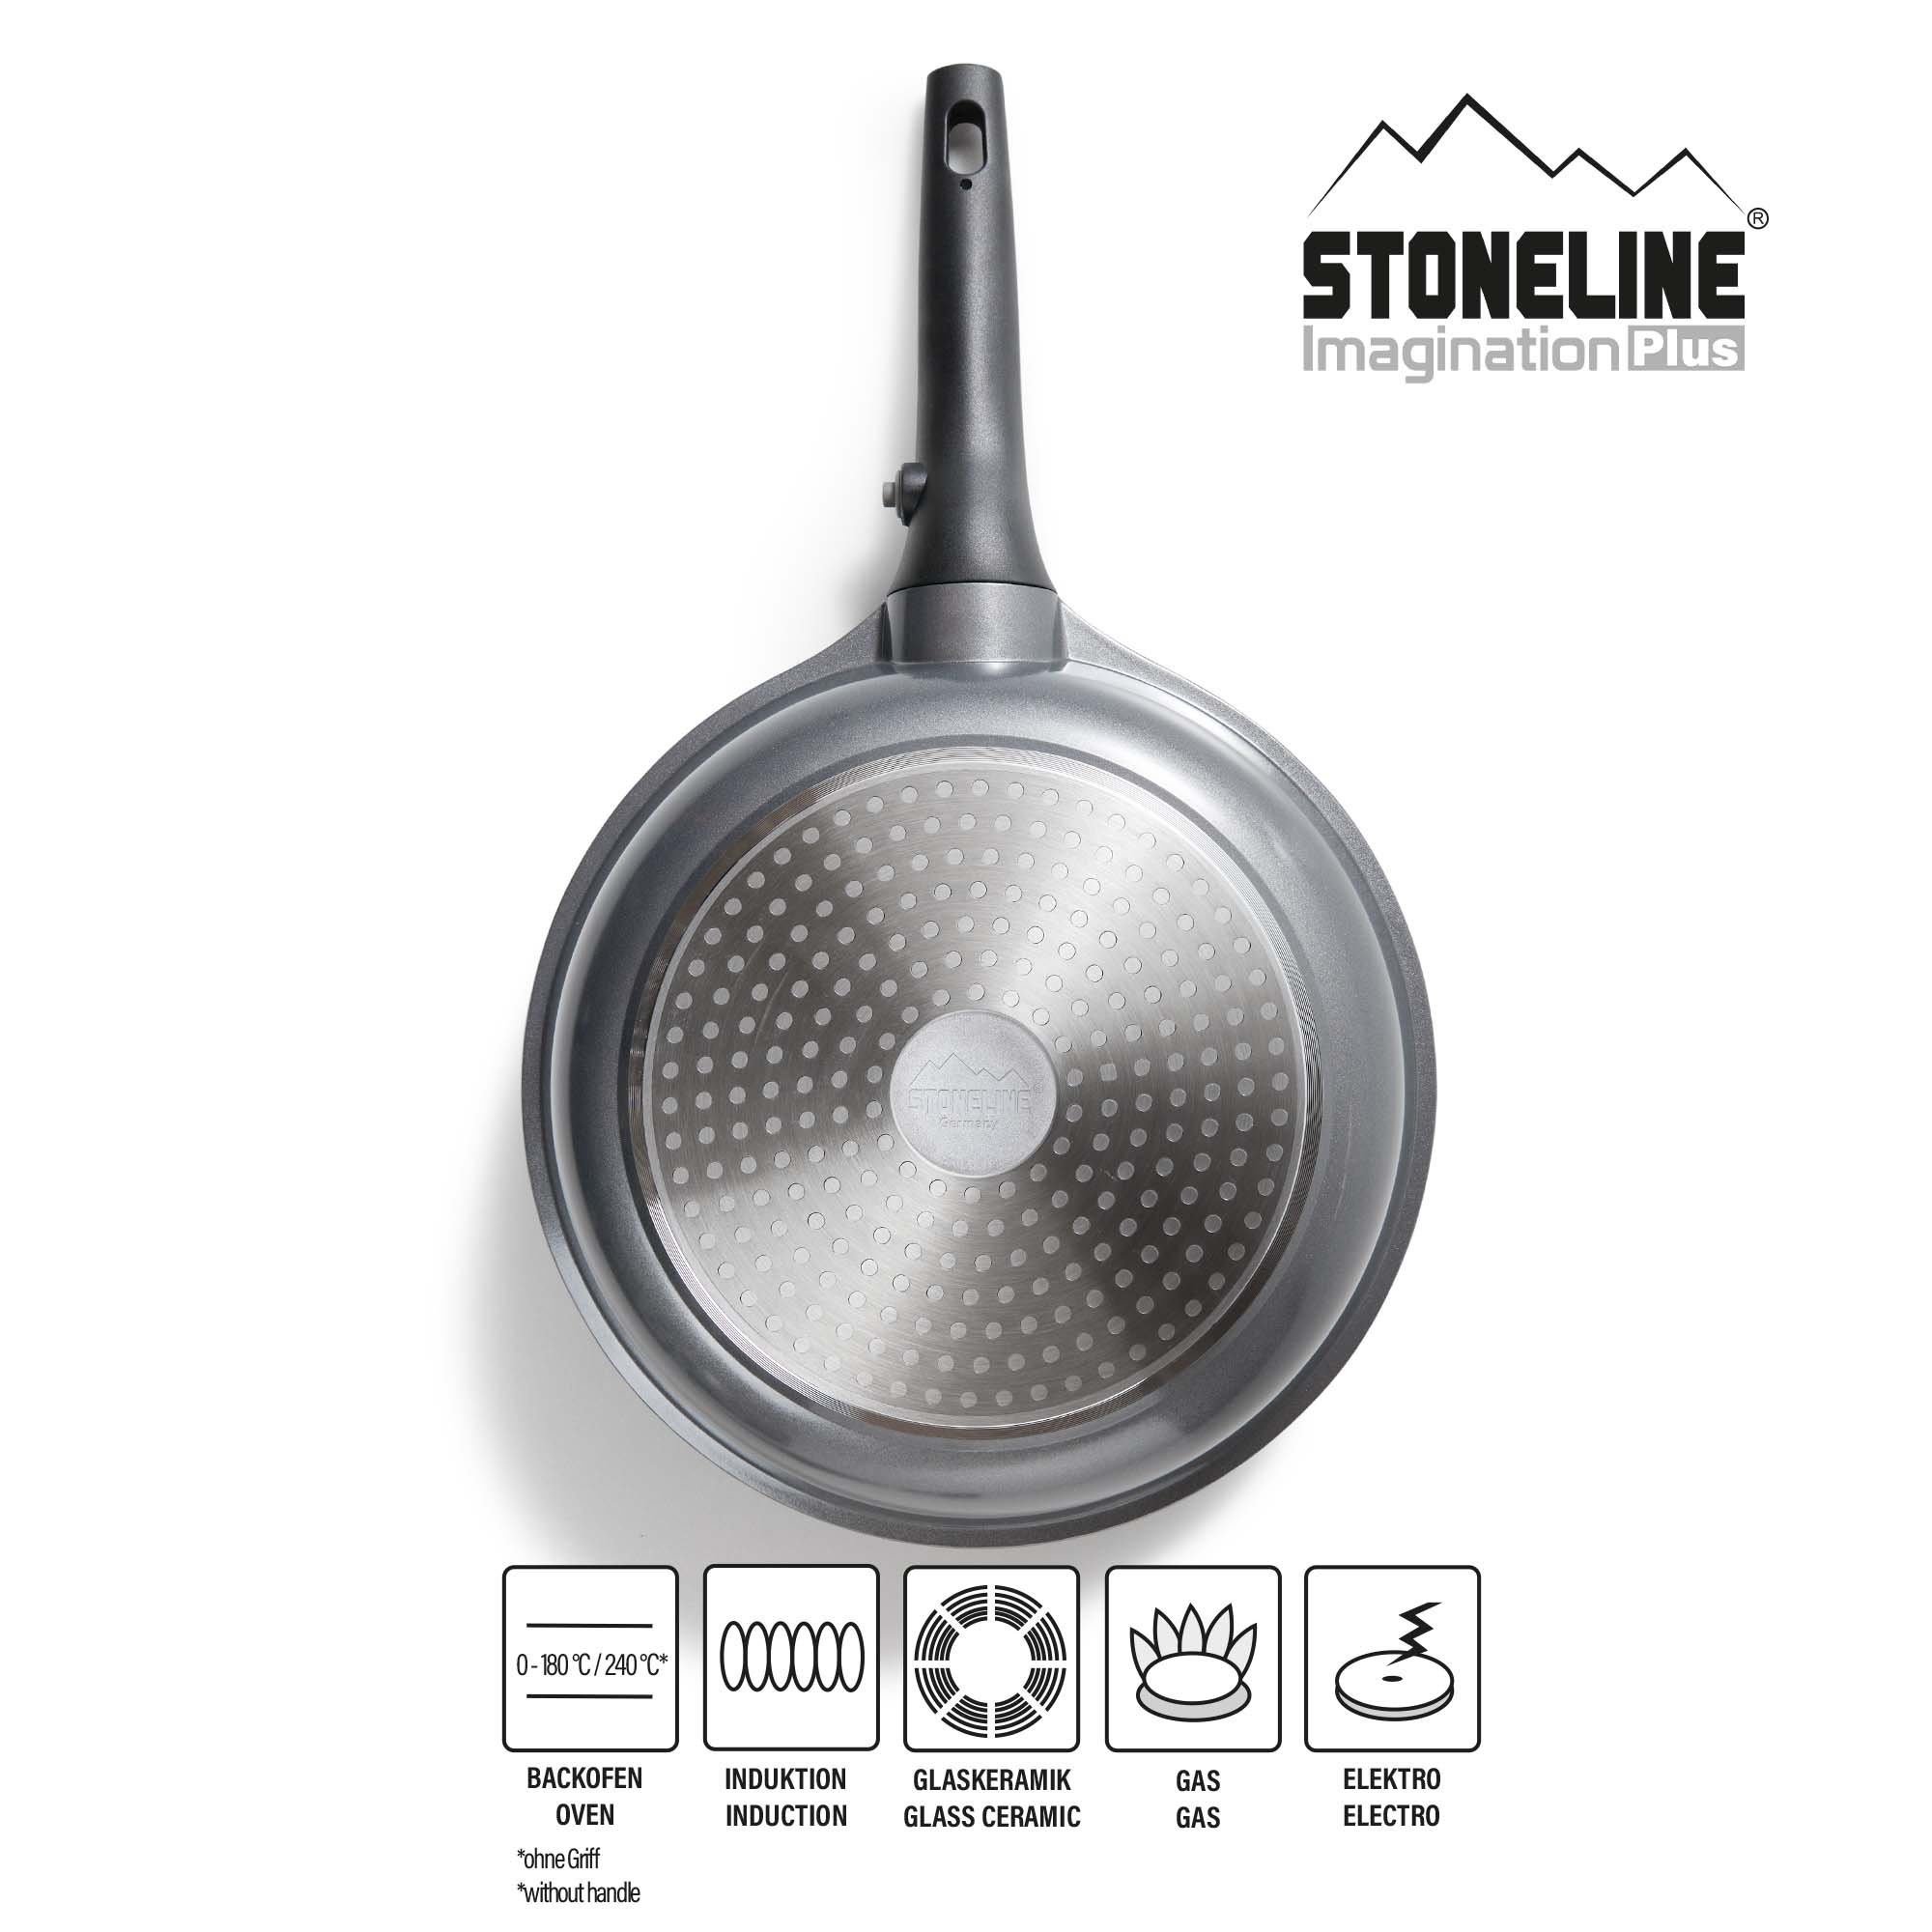 STONELINE® Frying Pan 24 cm, Removable Handle, Non-Stick Pan | Imagination PLUS